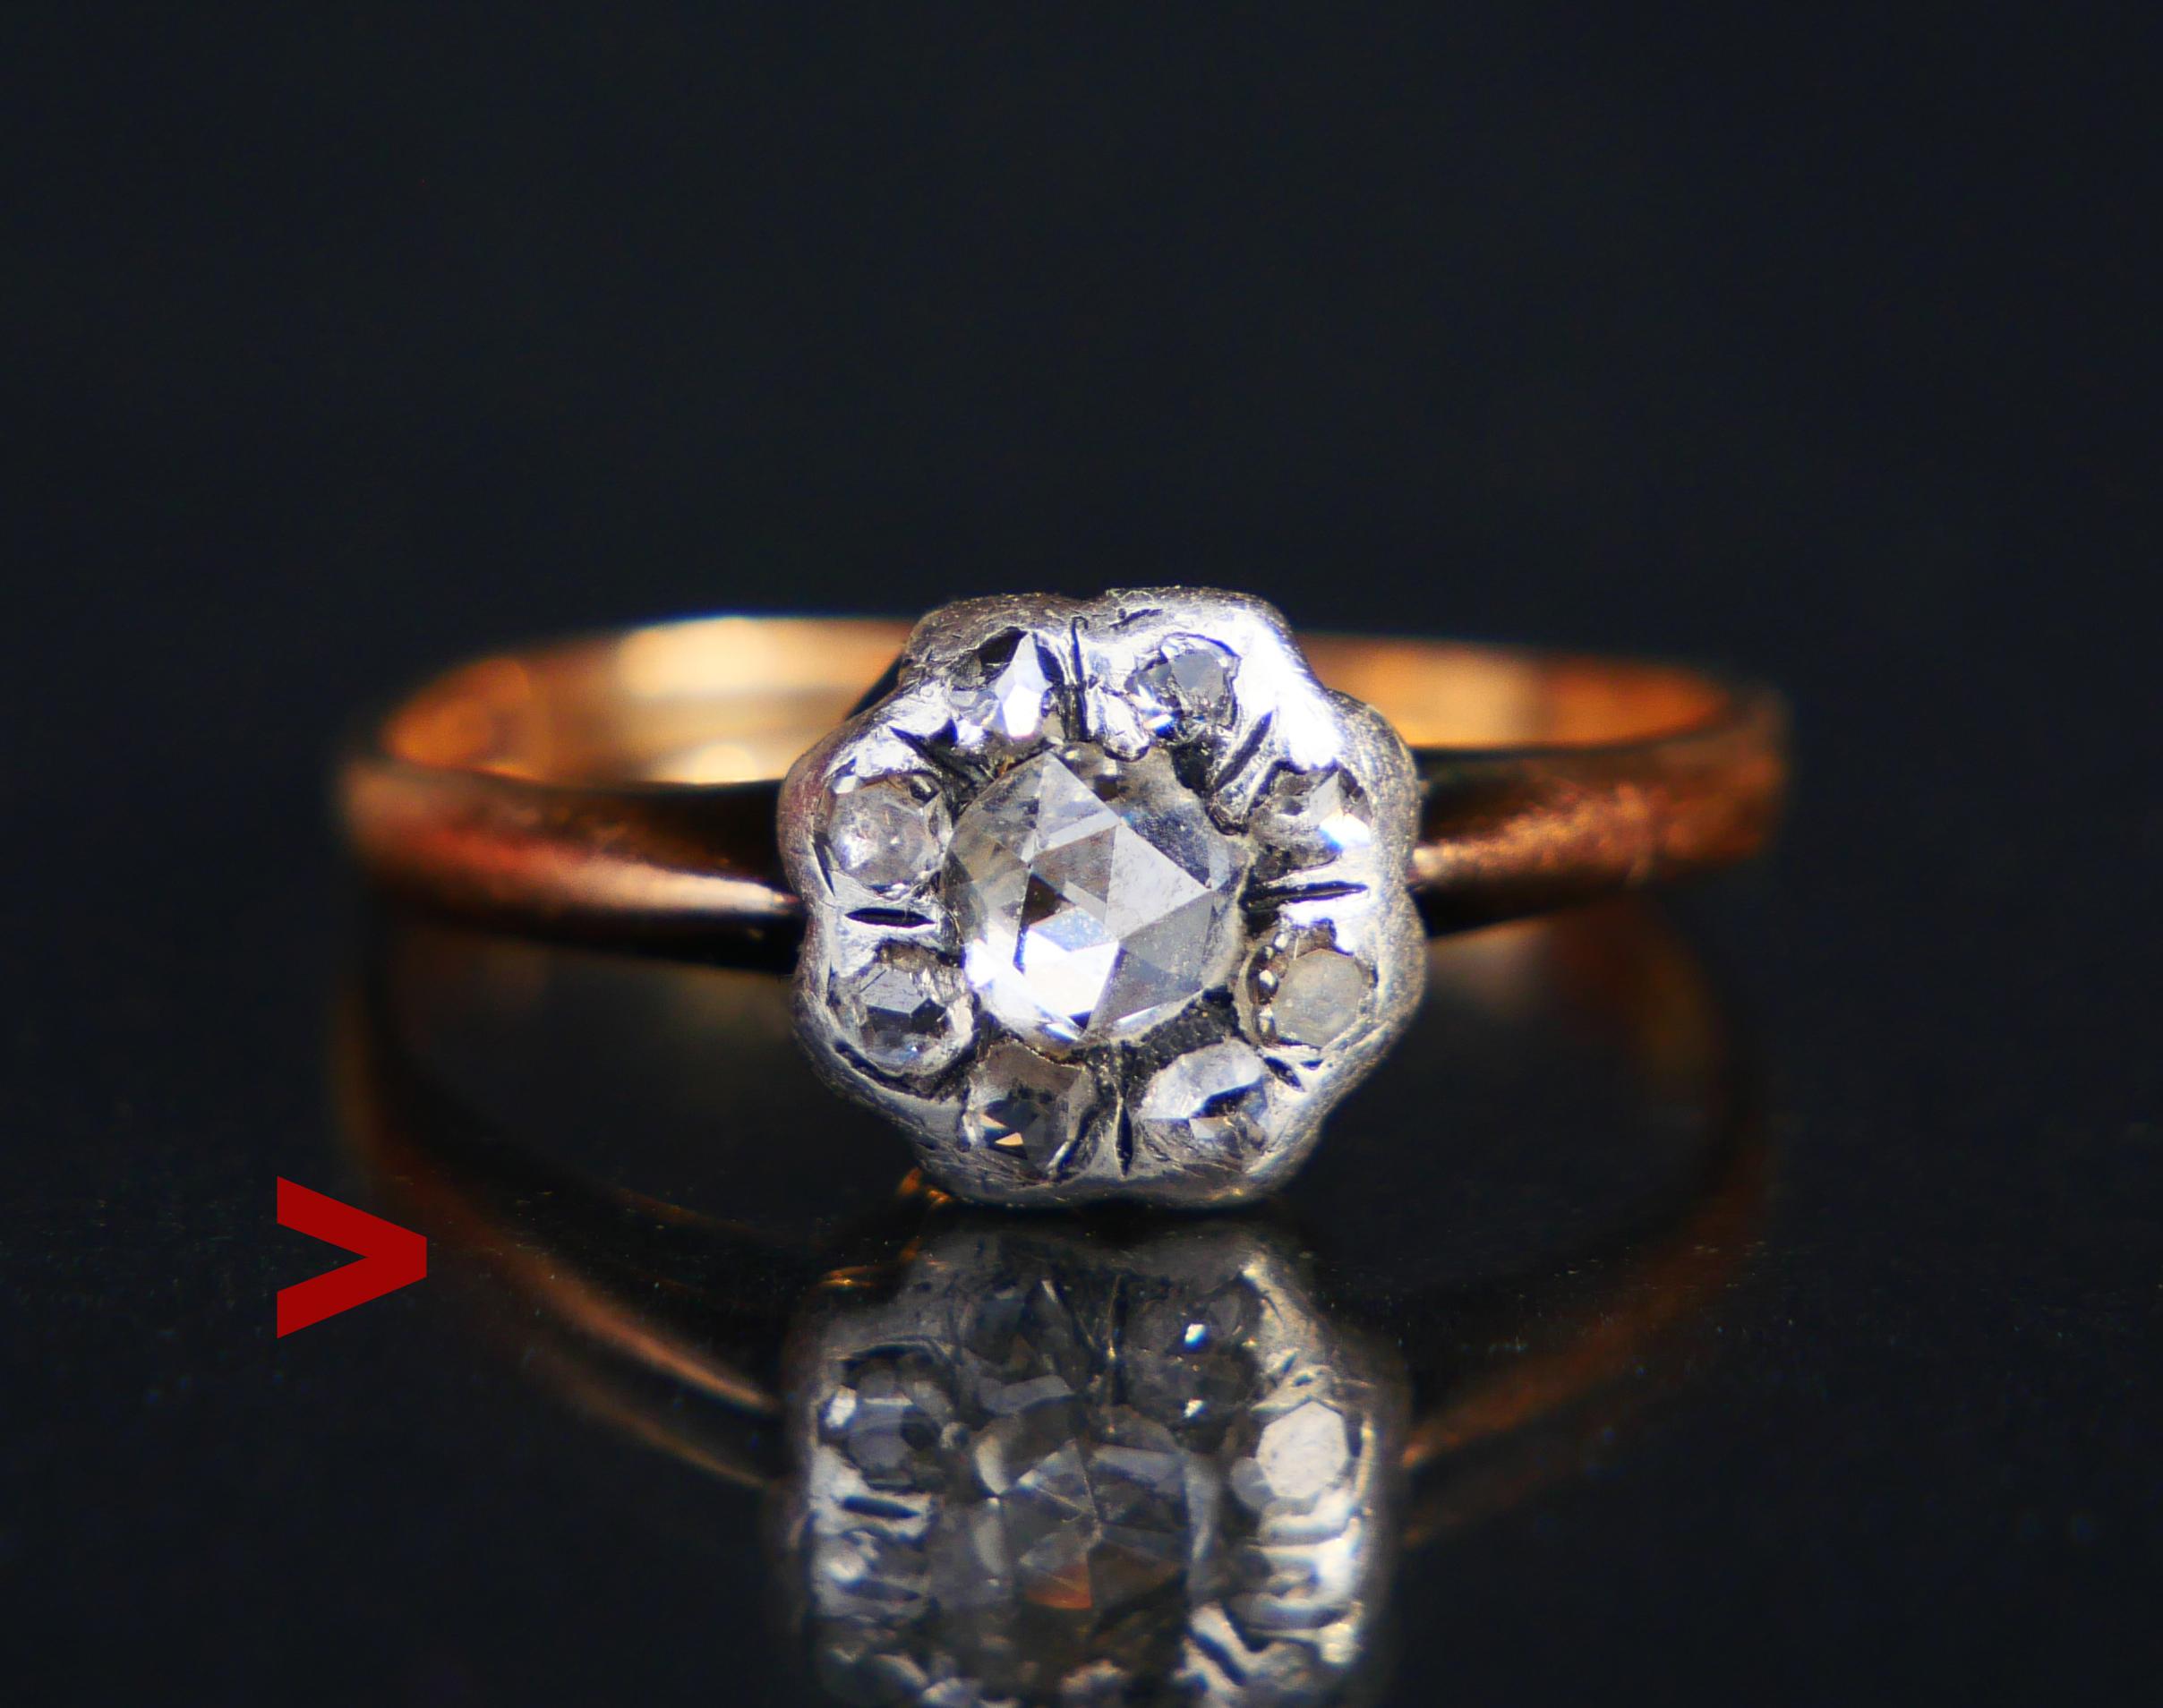 Alter Ring, besetzt mit einem silbernen Cluster aus neun Diamanten im Rosenschliff an einem 18-karätigen Goldring.

Gepunzt 18K , keine Herstellermarken. Hergestellt in Europa ca. 1900er-1920er Jahre

Abmessungen: Die Krone ist Ø 8 mm x 4 mm